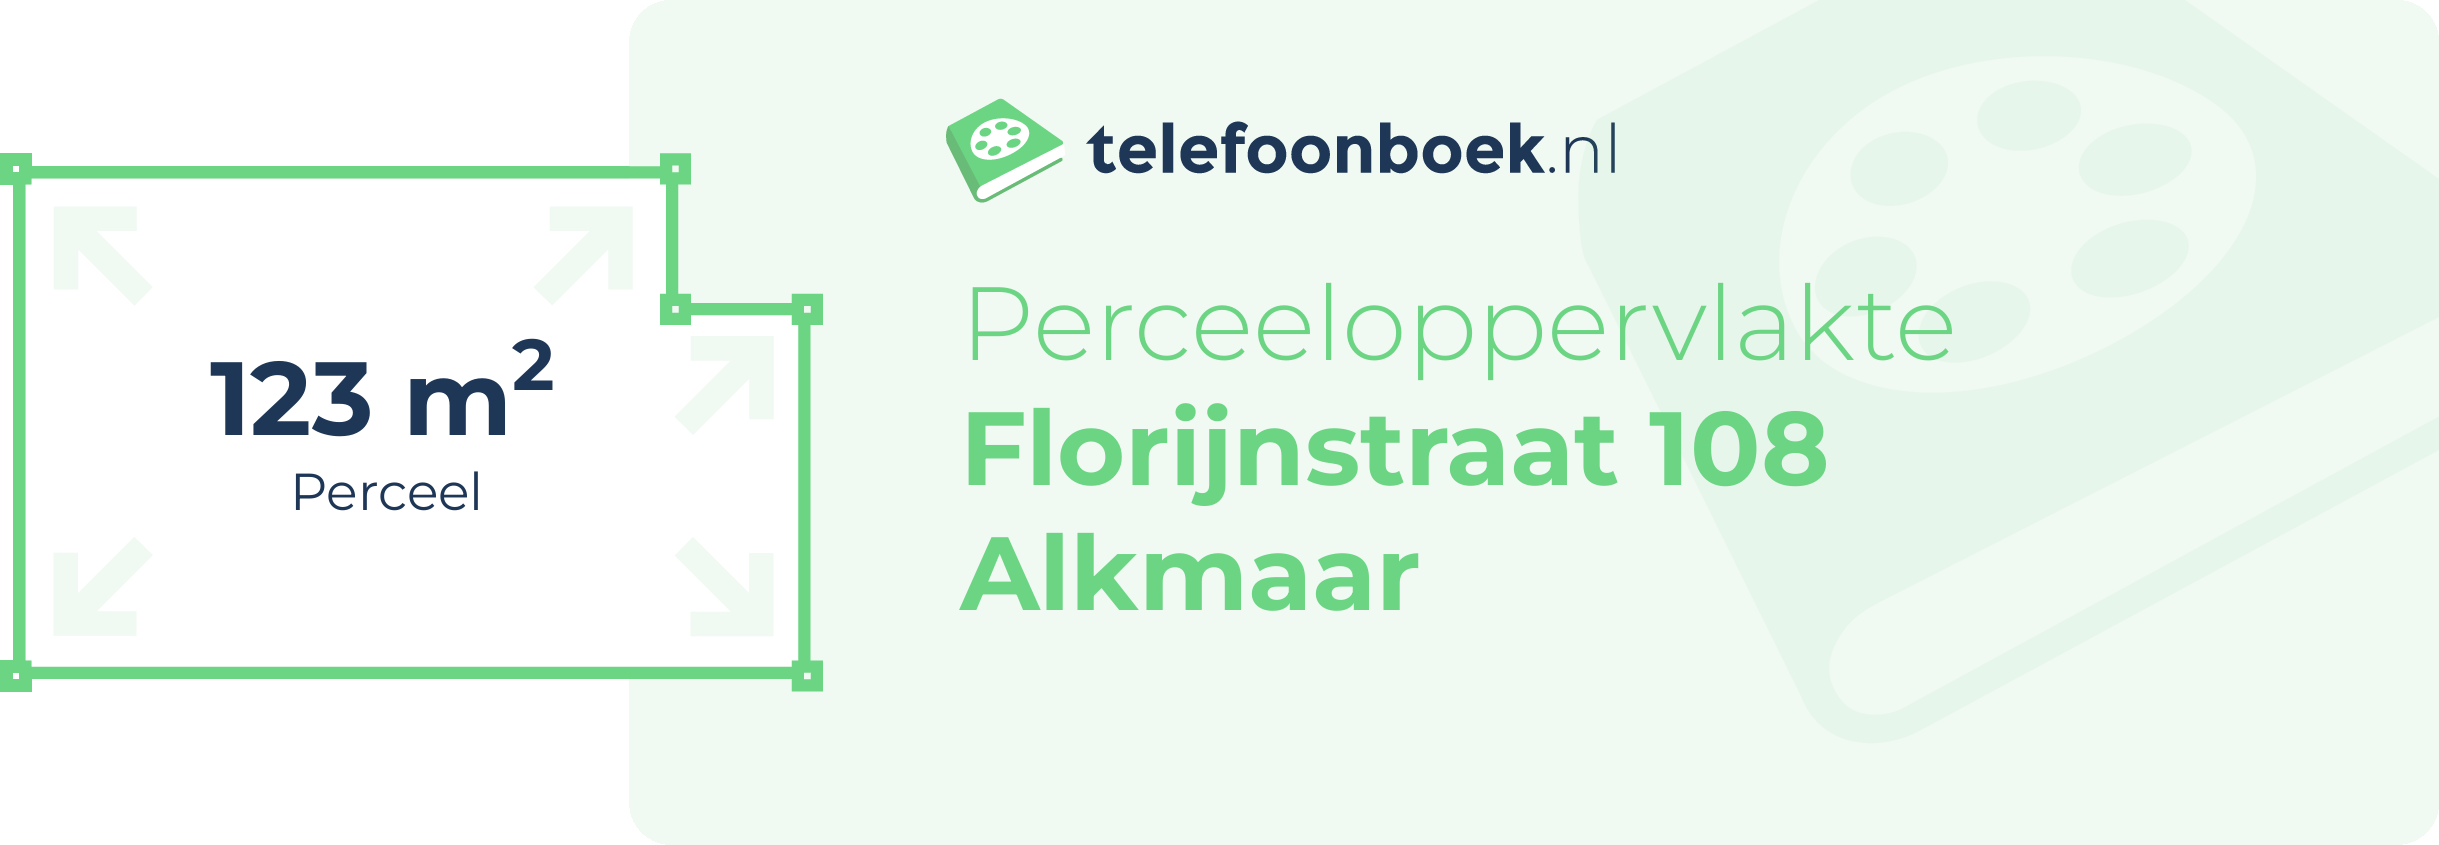 Perceeloppervlakte Florijnstraat 108 Alkmaar